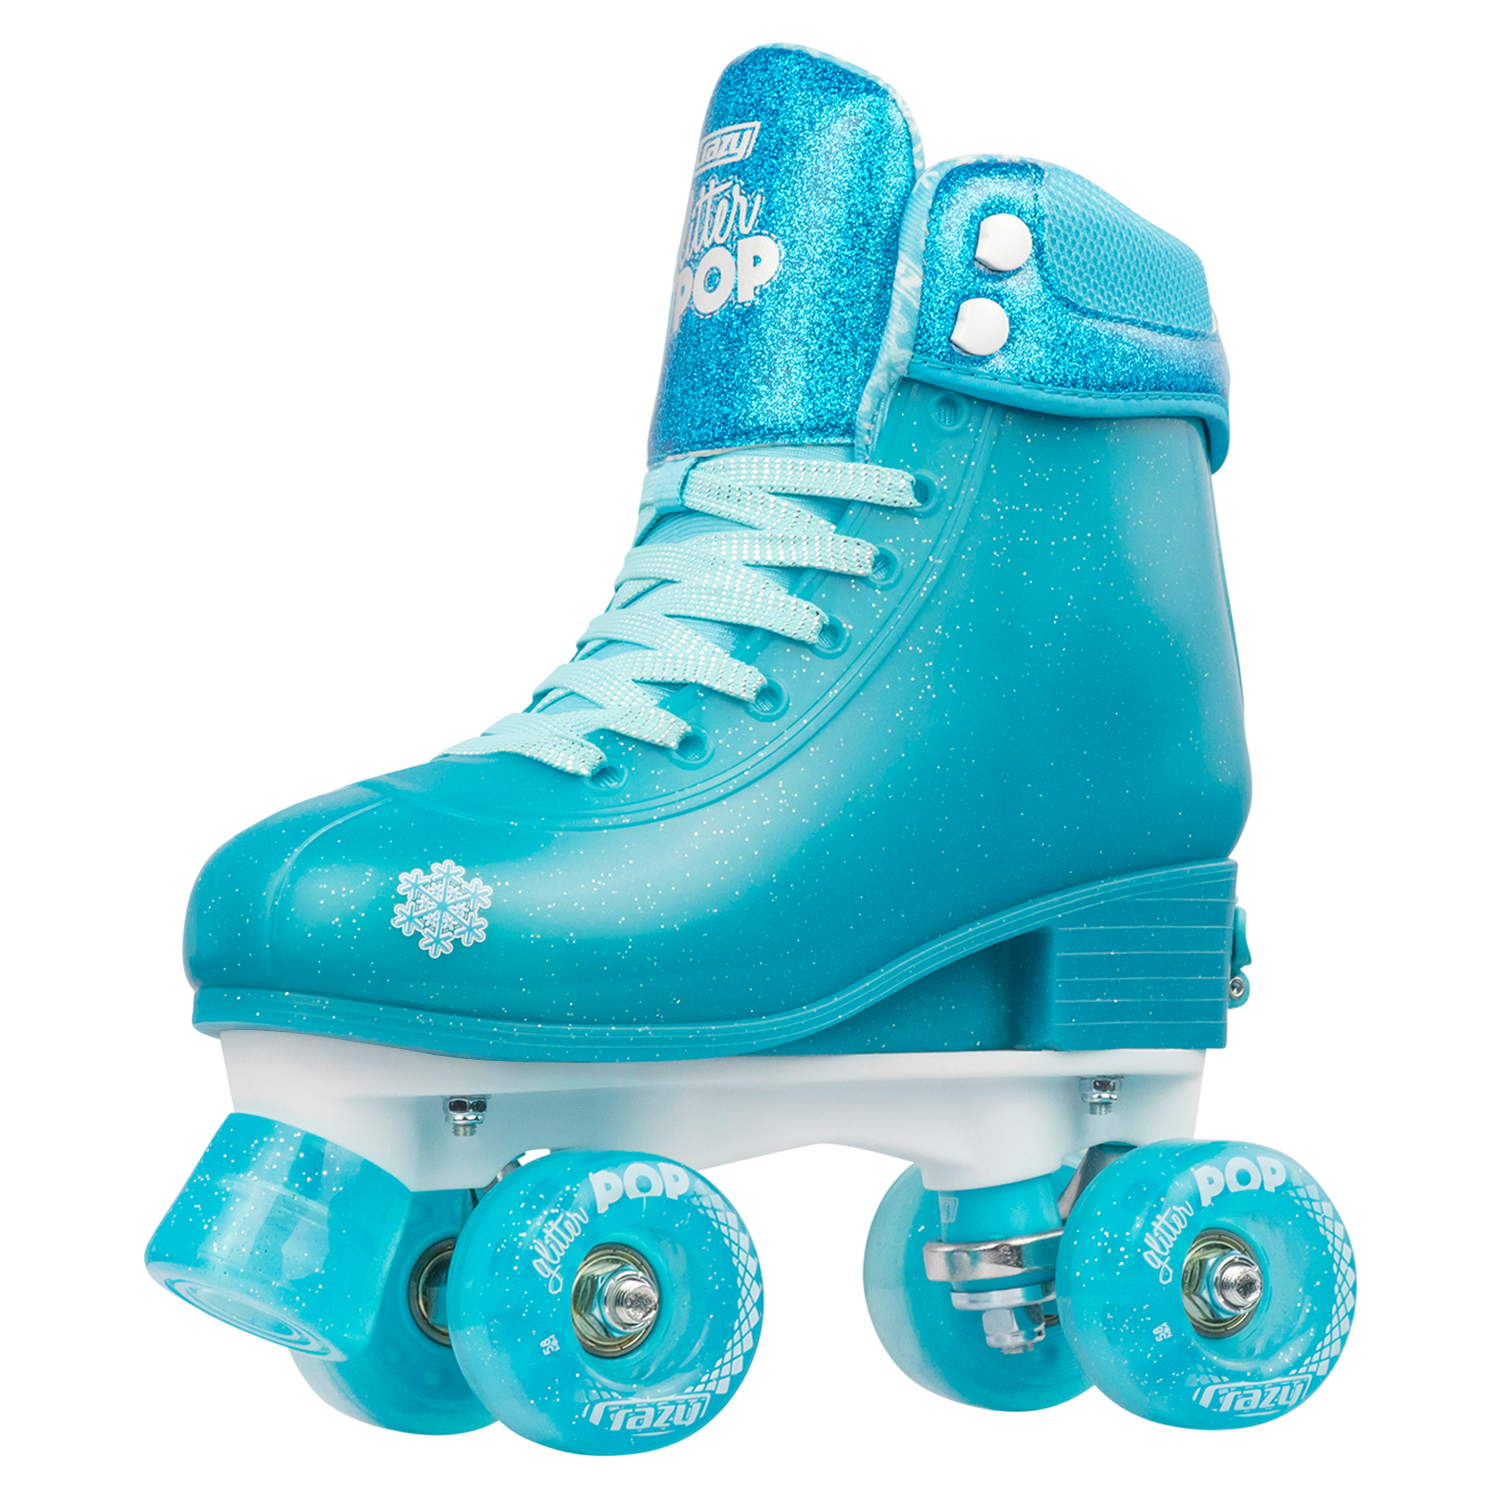 Teal Roller Skates